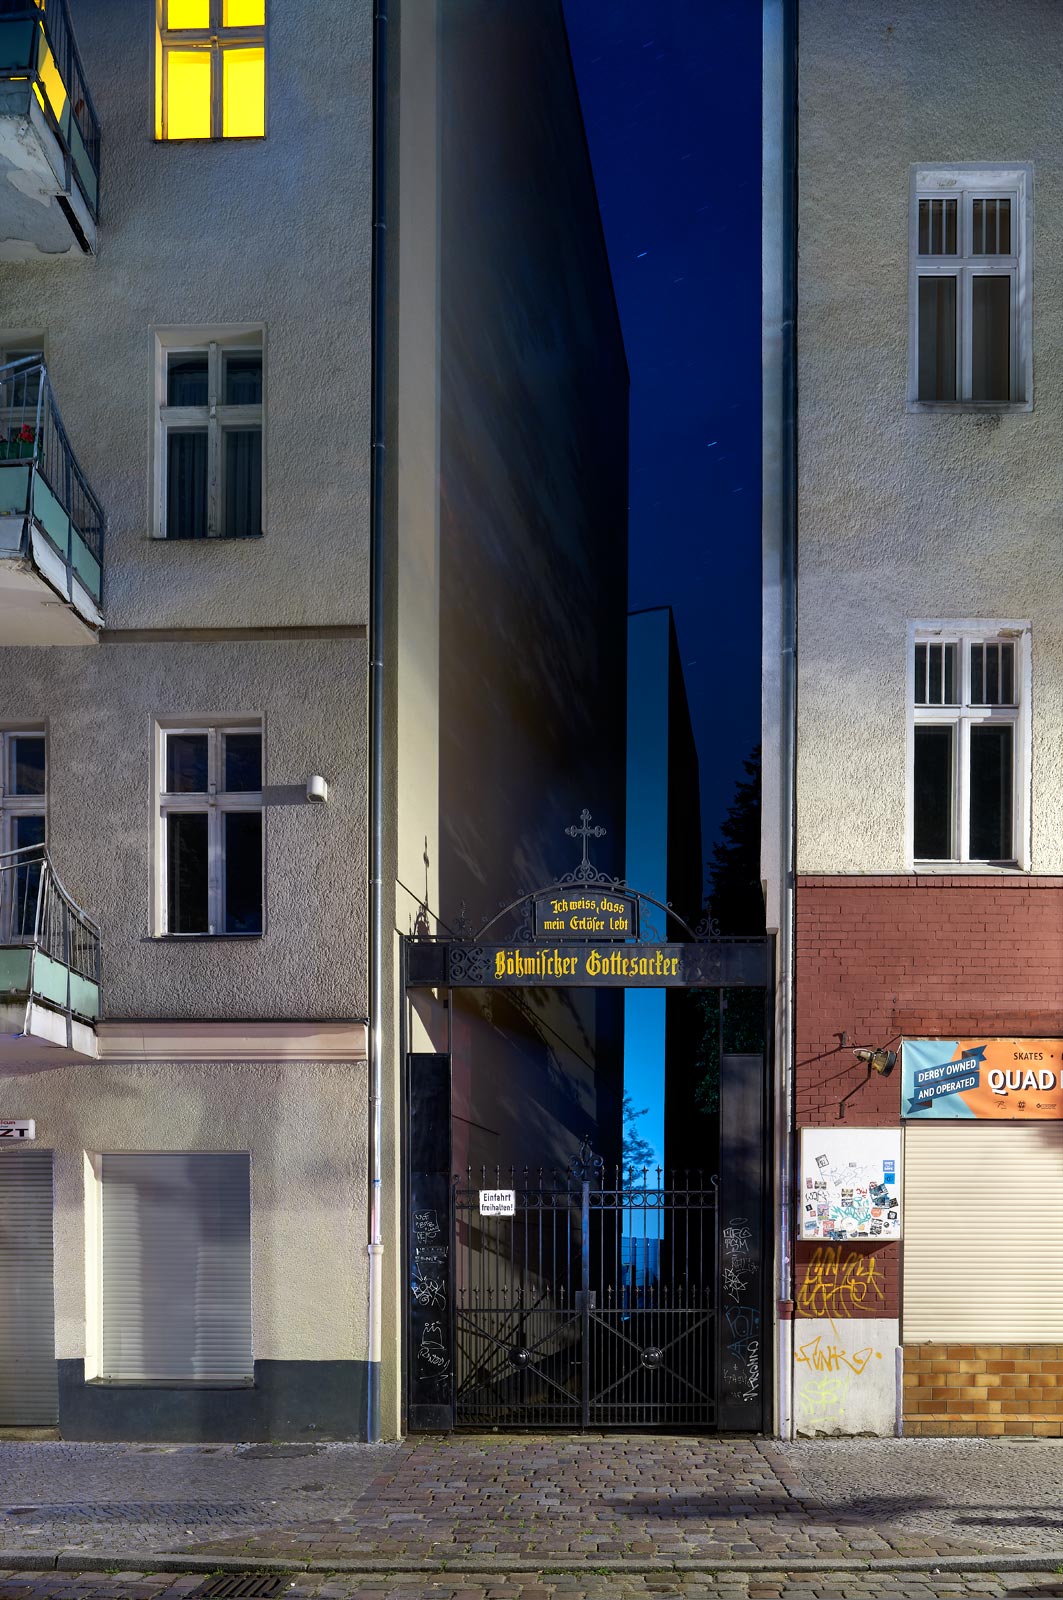 foto: manfred bogner, berlin, mind the gap